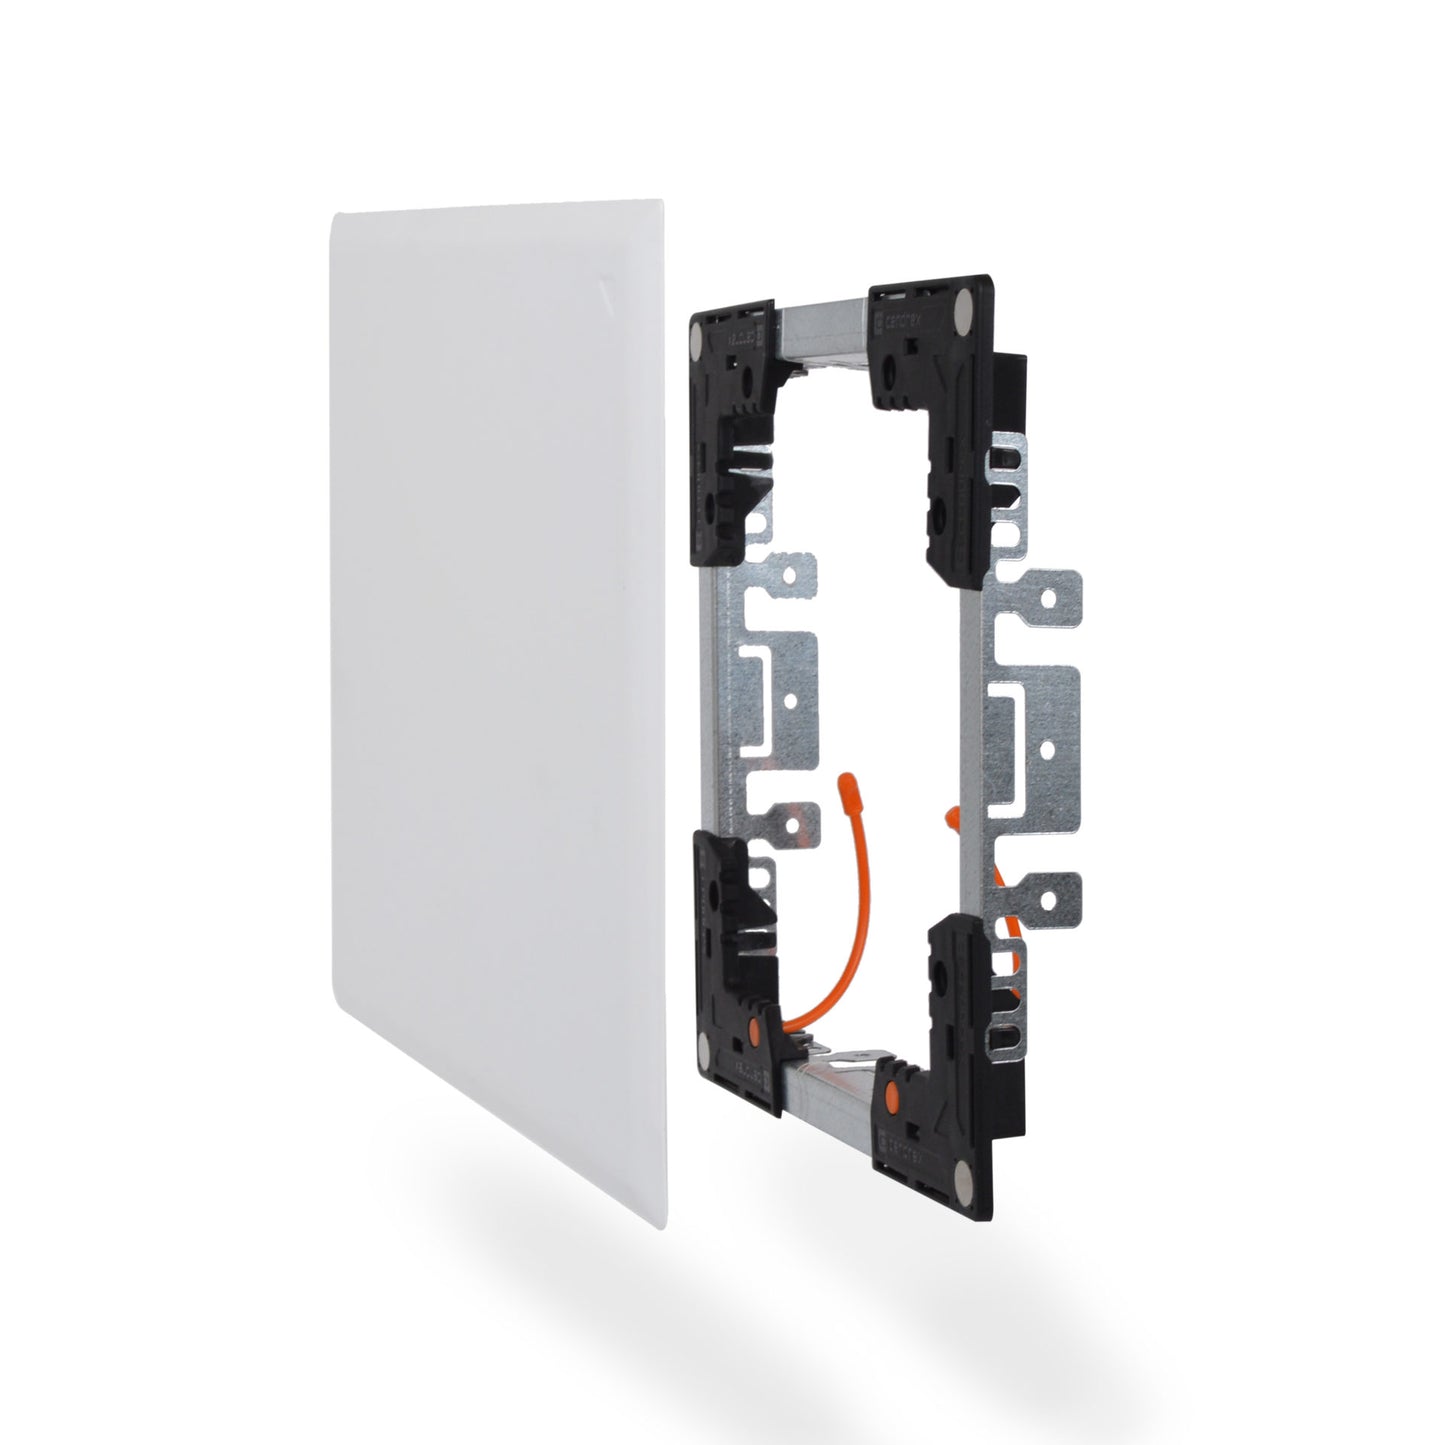 Cendrex 6.5" x 8" FLEXISNAP Adjustable & Magnetic Universal Access Door